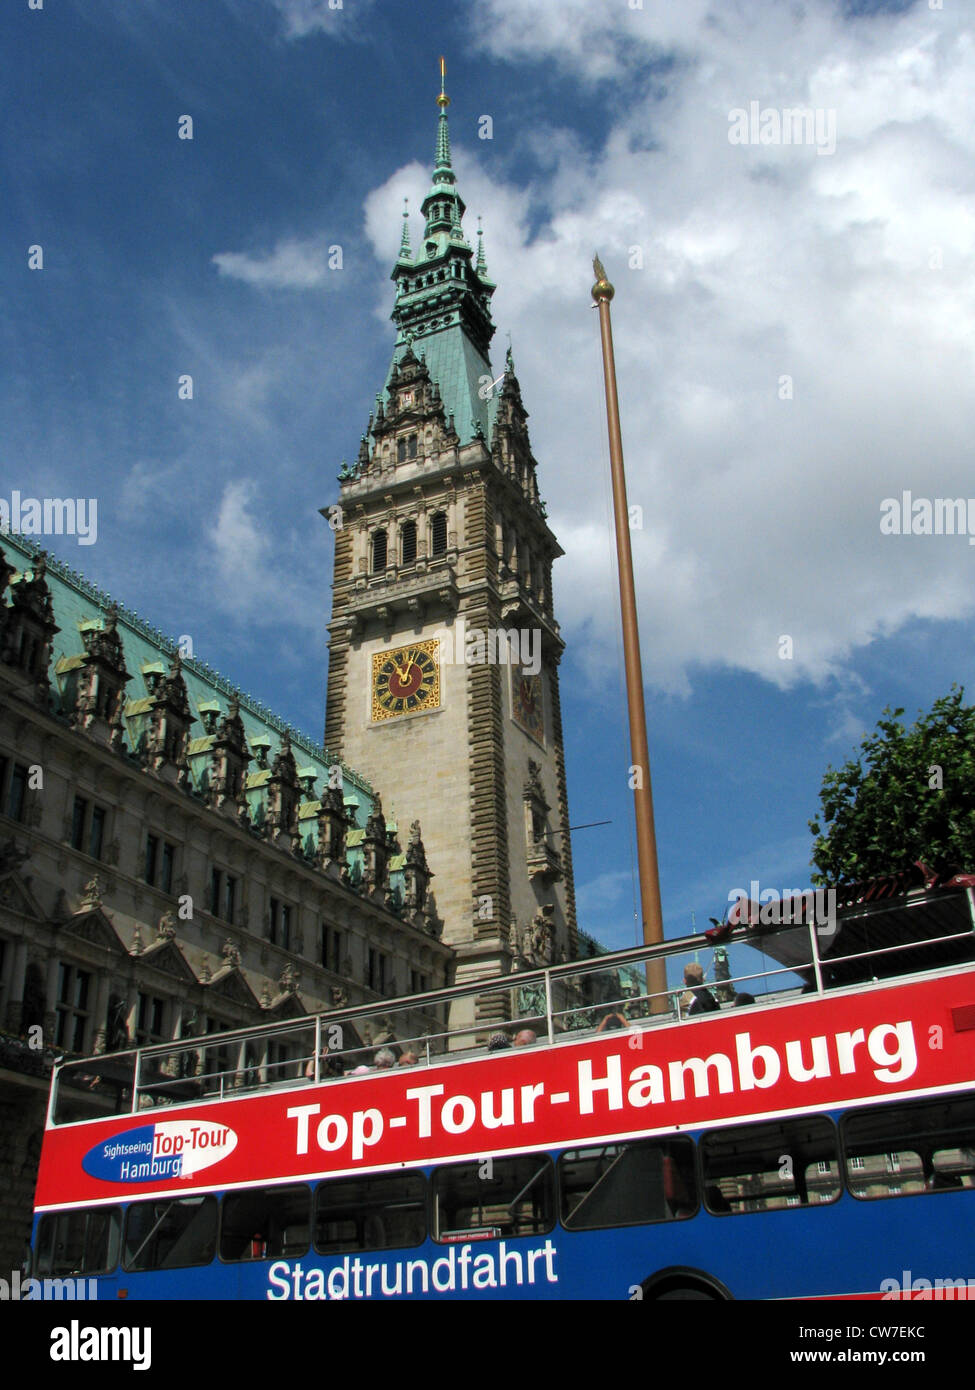 Autobus turistico durante il tour della città si trova di fronte al municipio di Amburgo, Germania, Amburgo Foto Stock